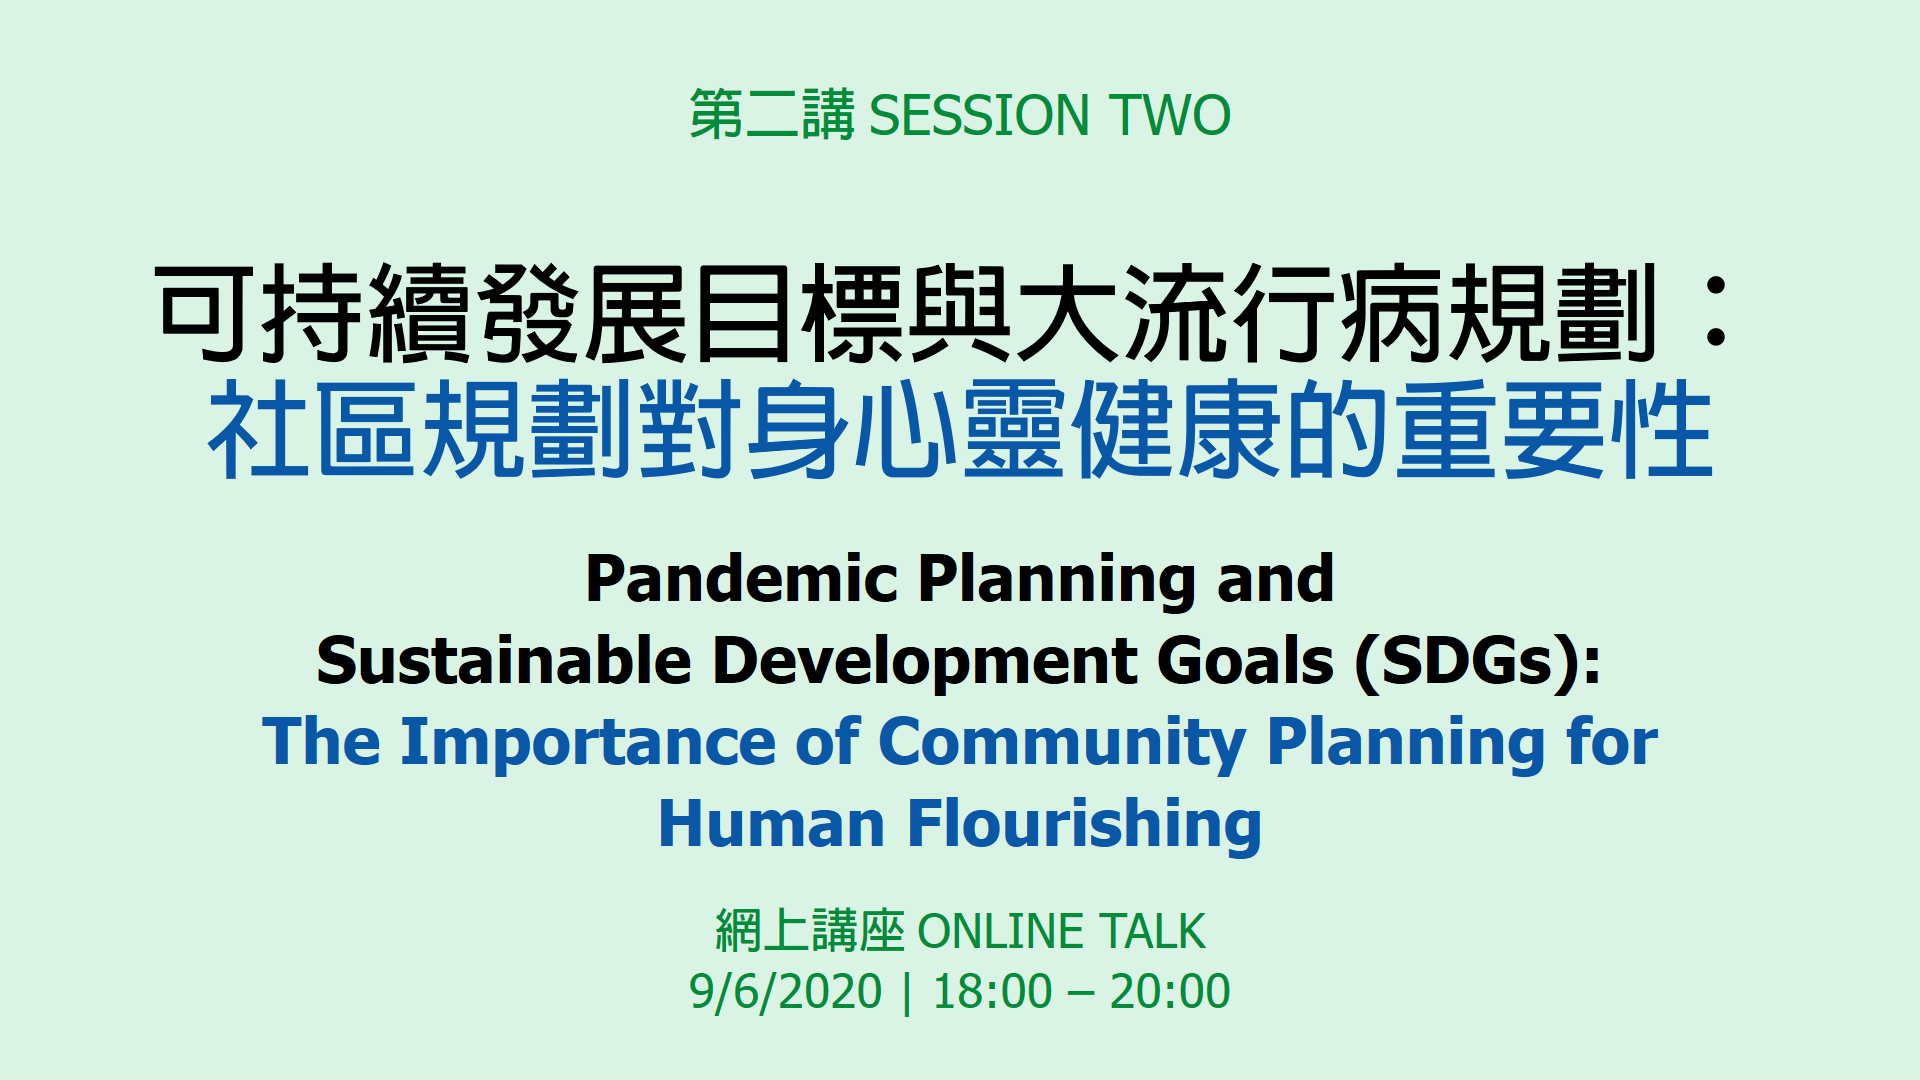 SDSNHK X GE SDG Forum 202006 session 2 Web Banner v1